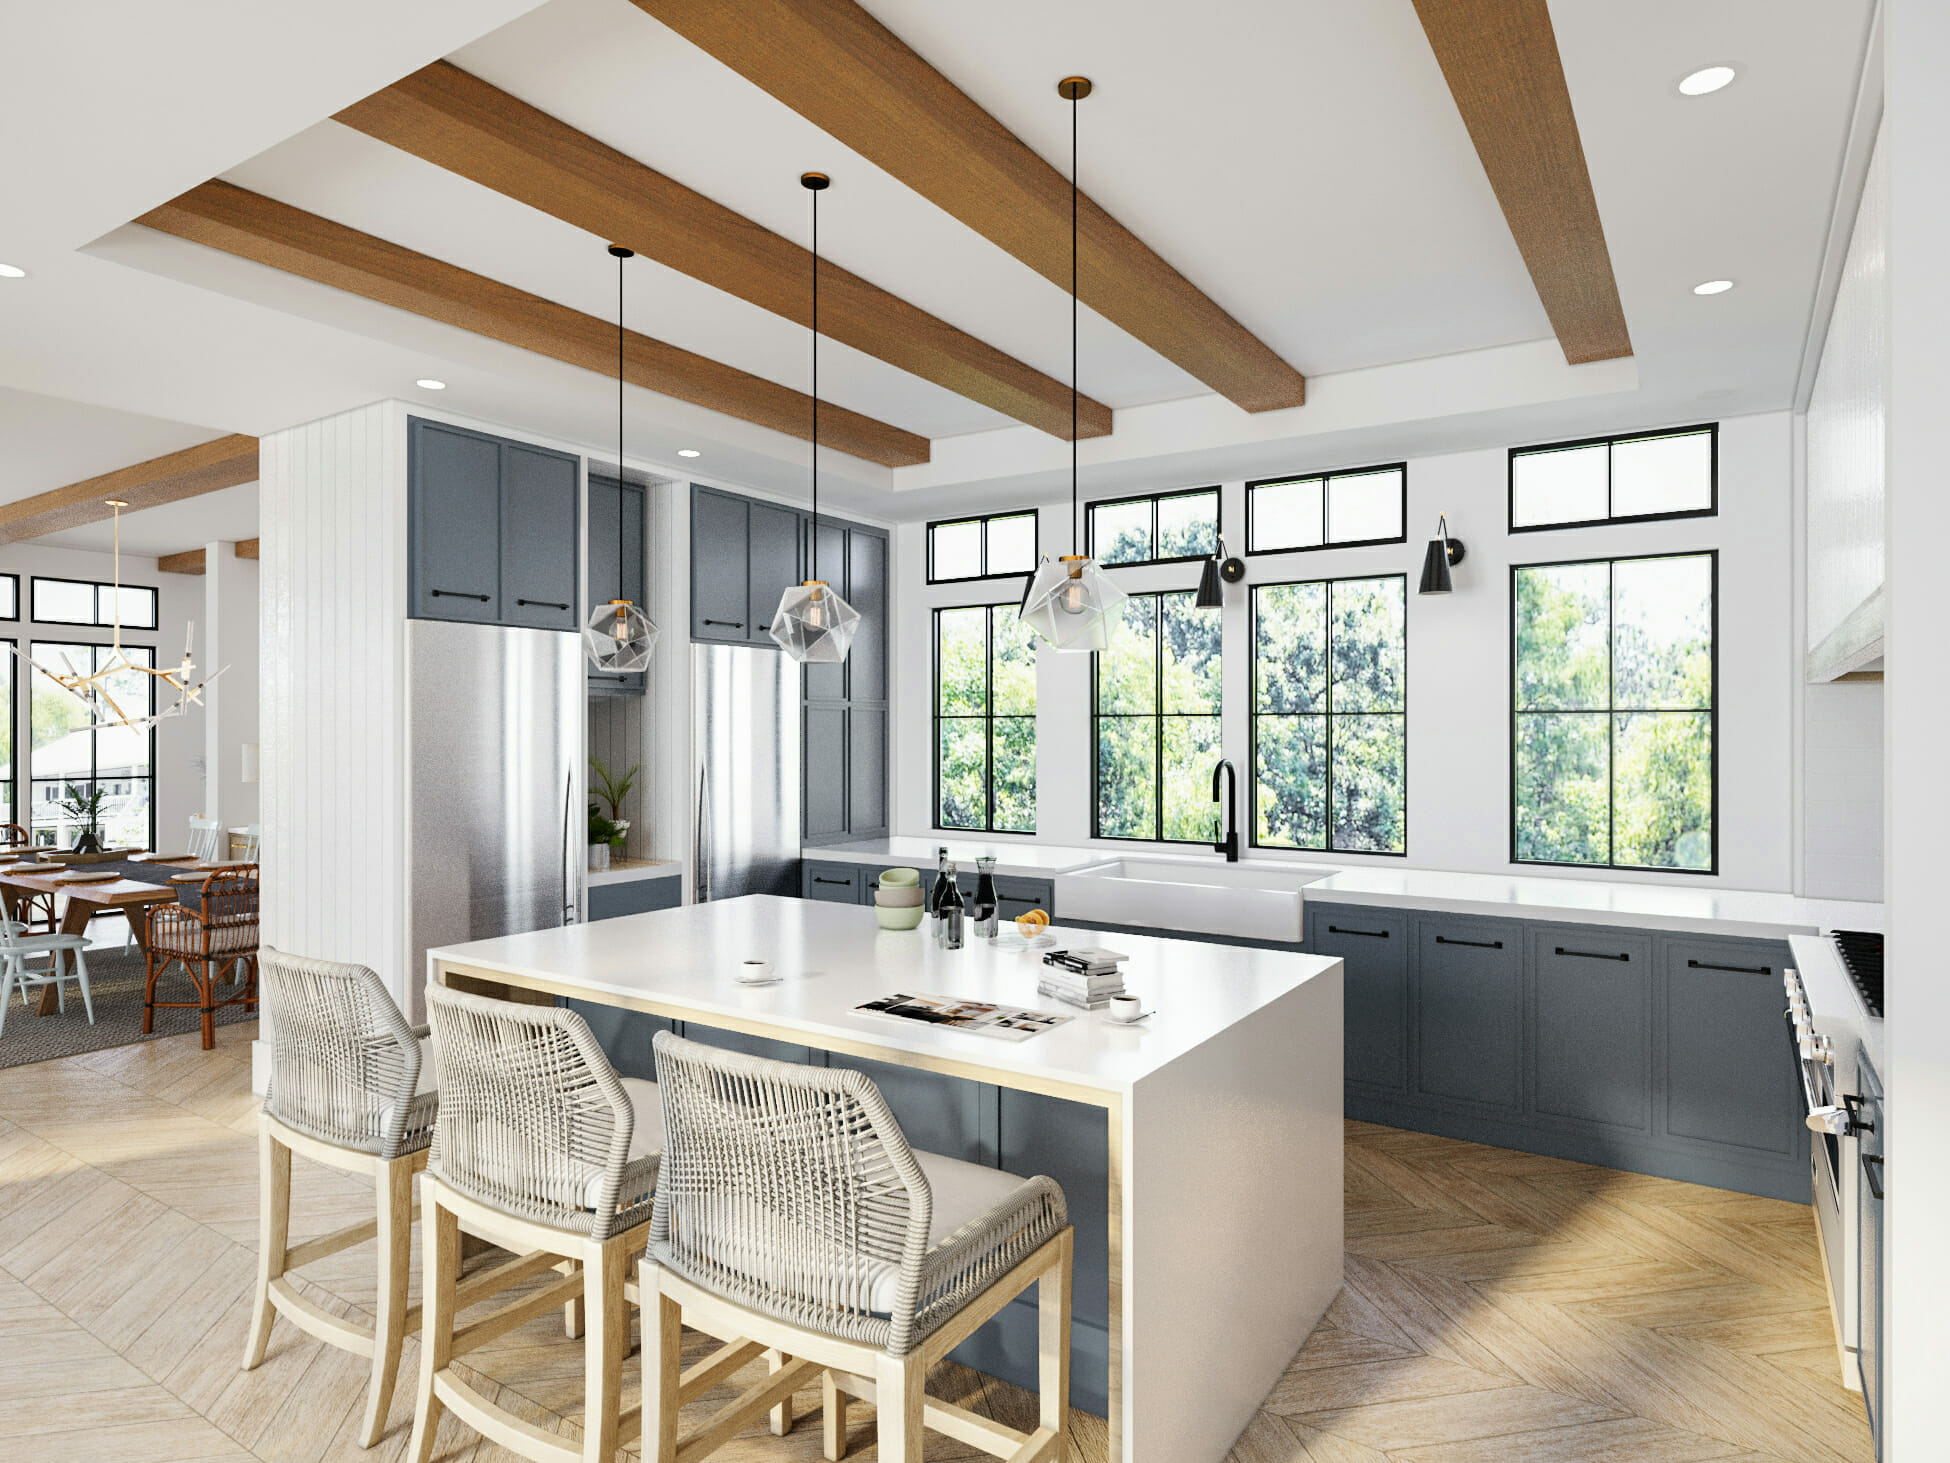 modern kitchen interior design by decorilla designer sonia c